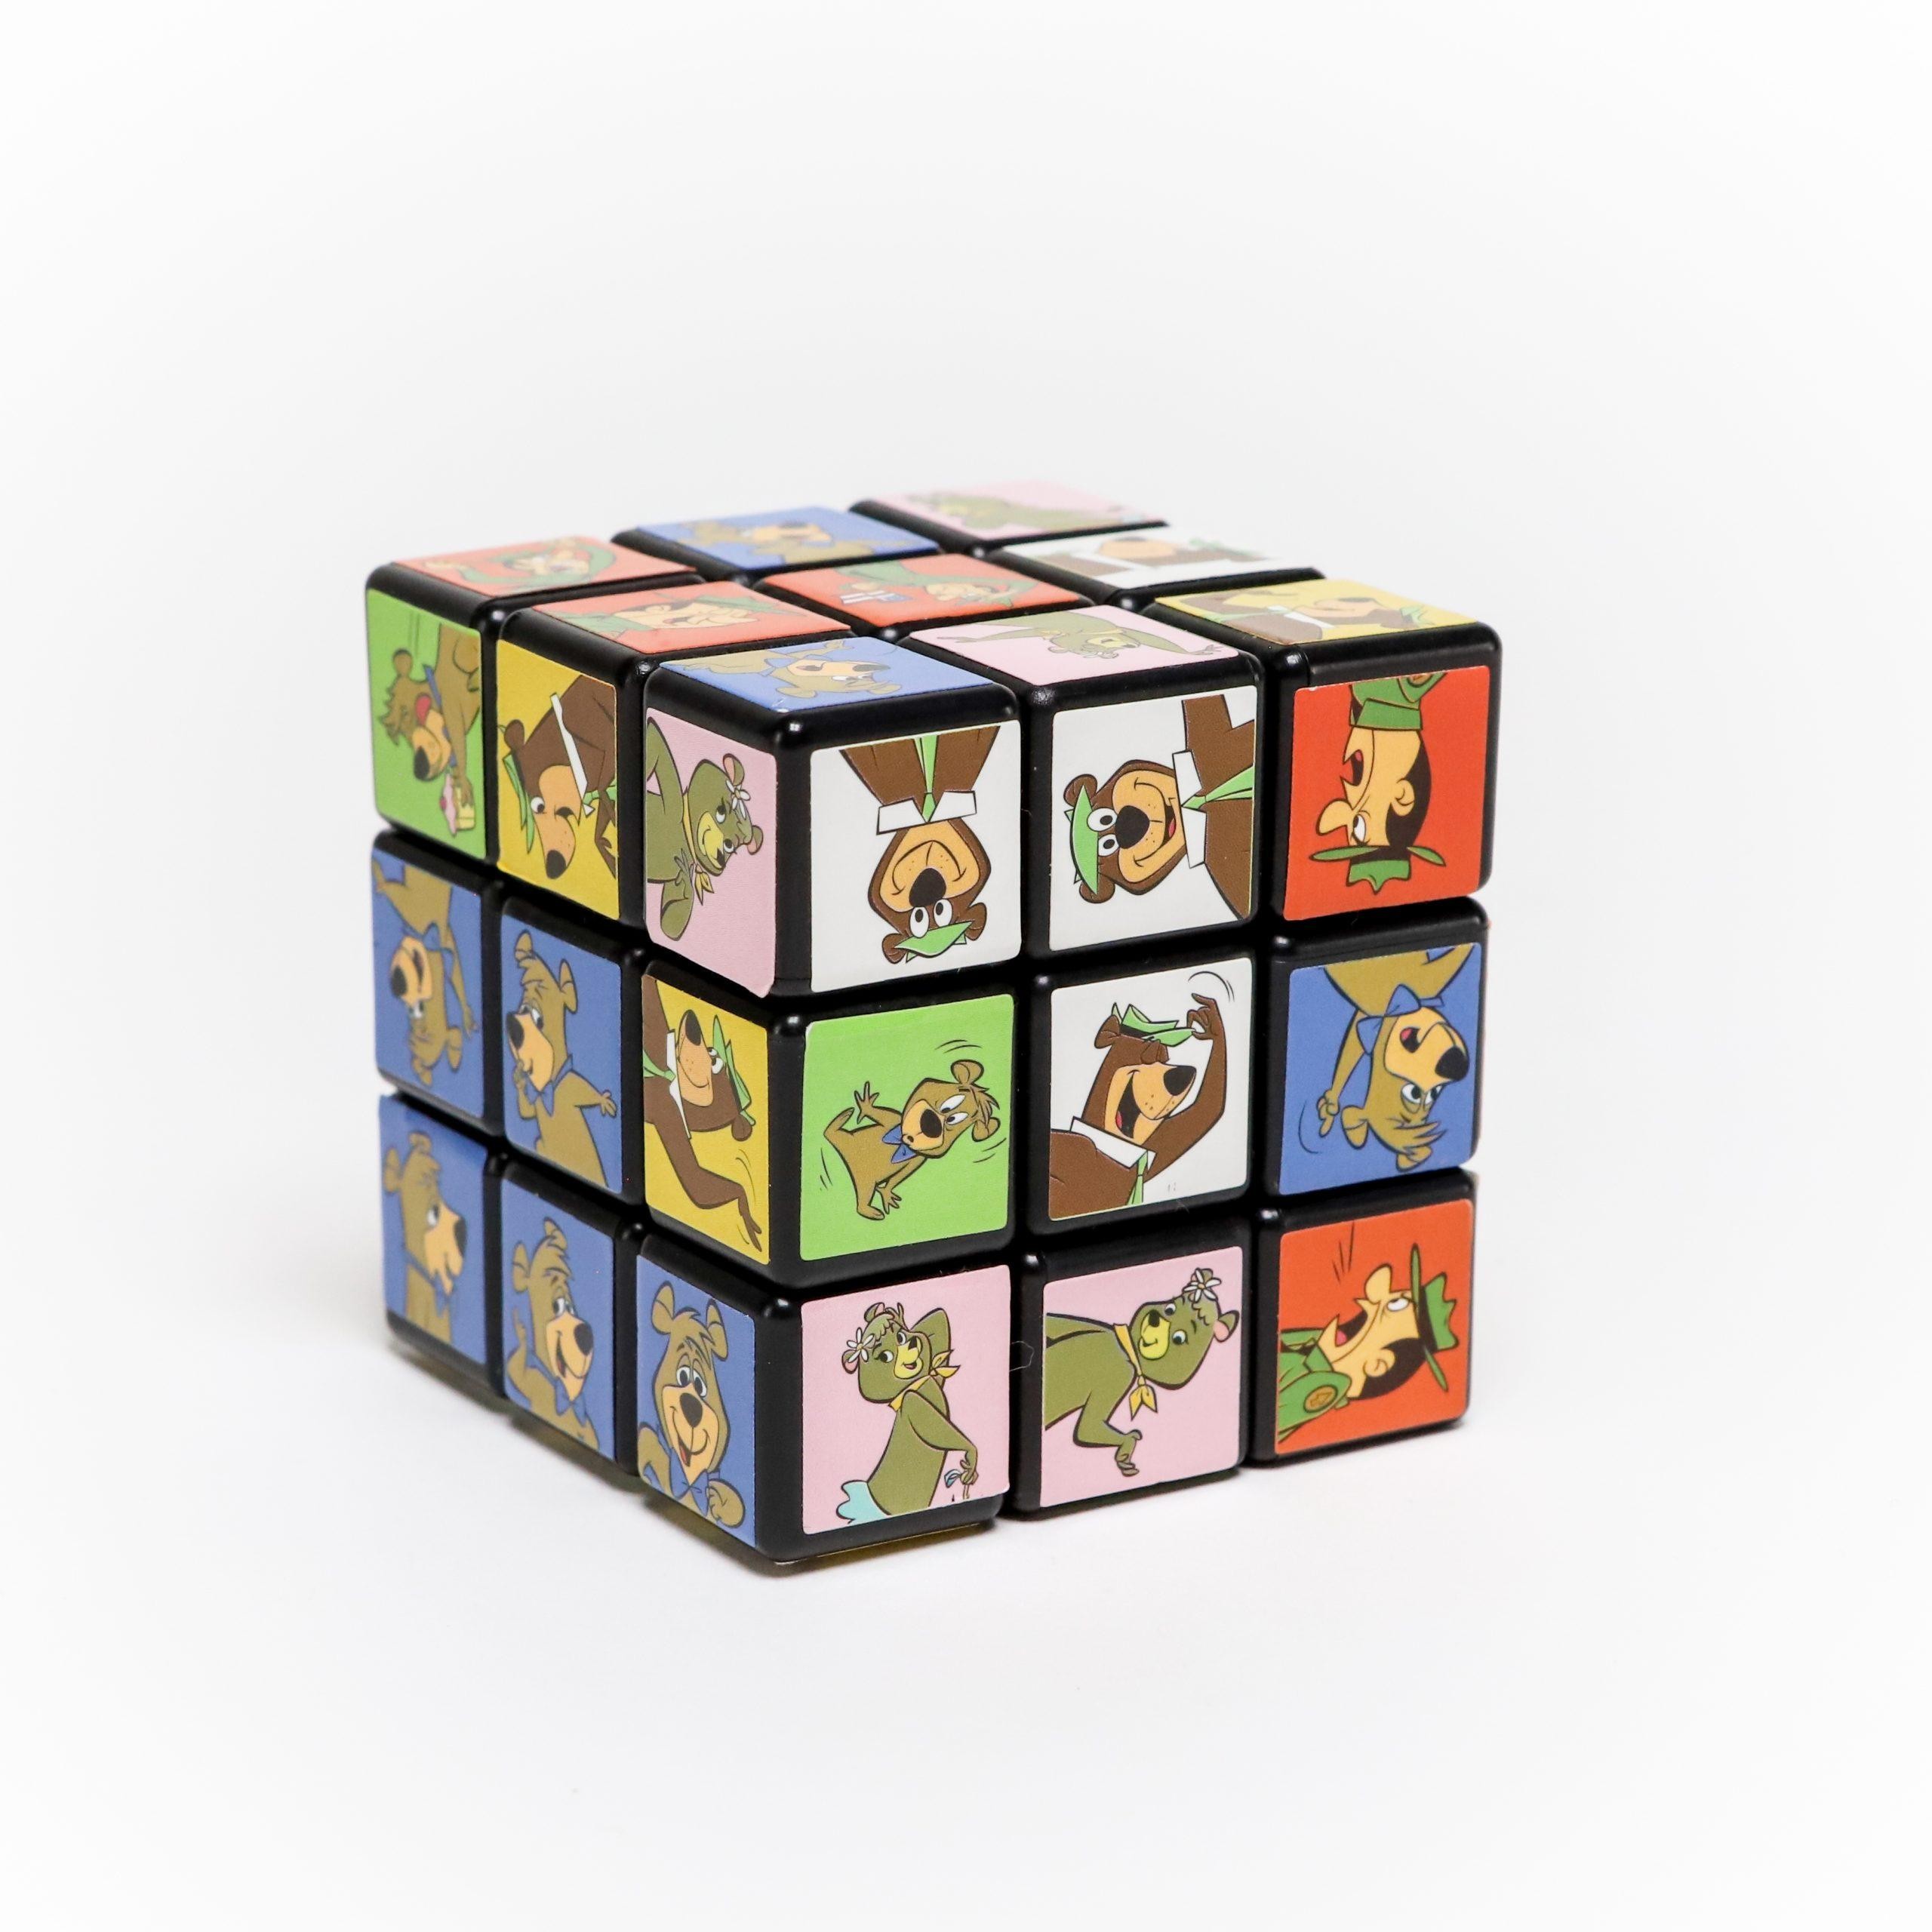 Jellystone Park Character Rubik's Cube